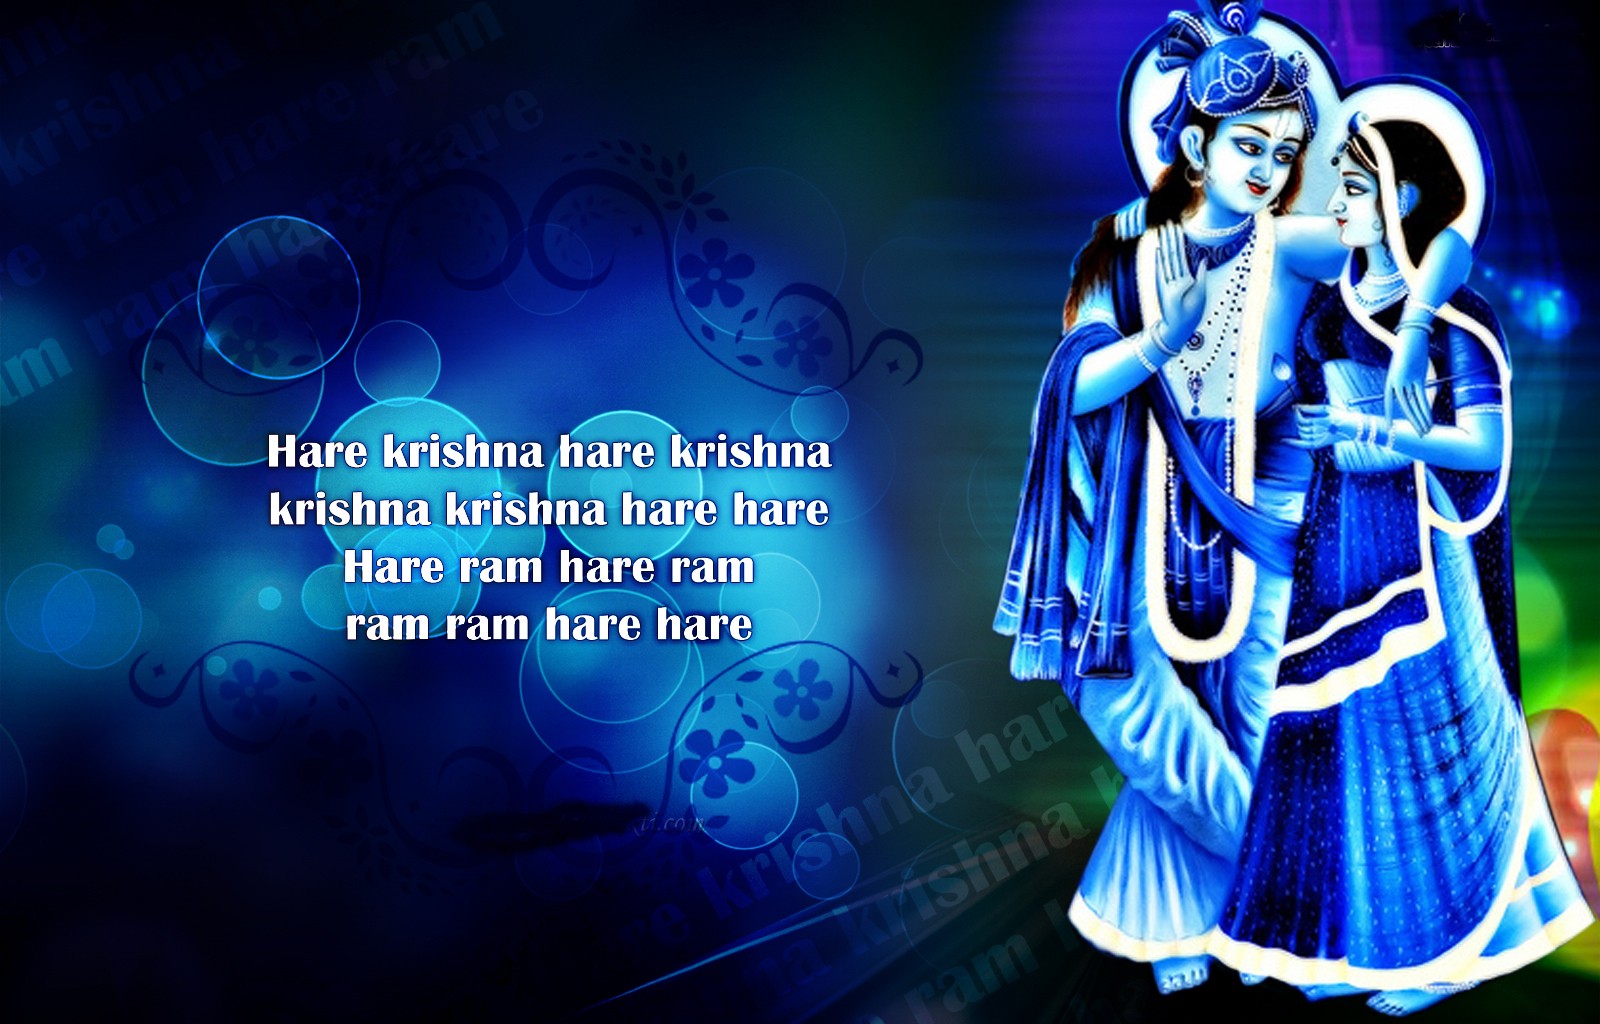 Radhe krishna text message wallpaper hd | Rocks wallpaper hd